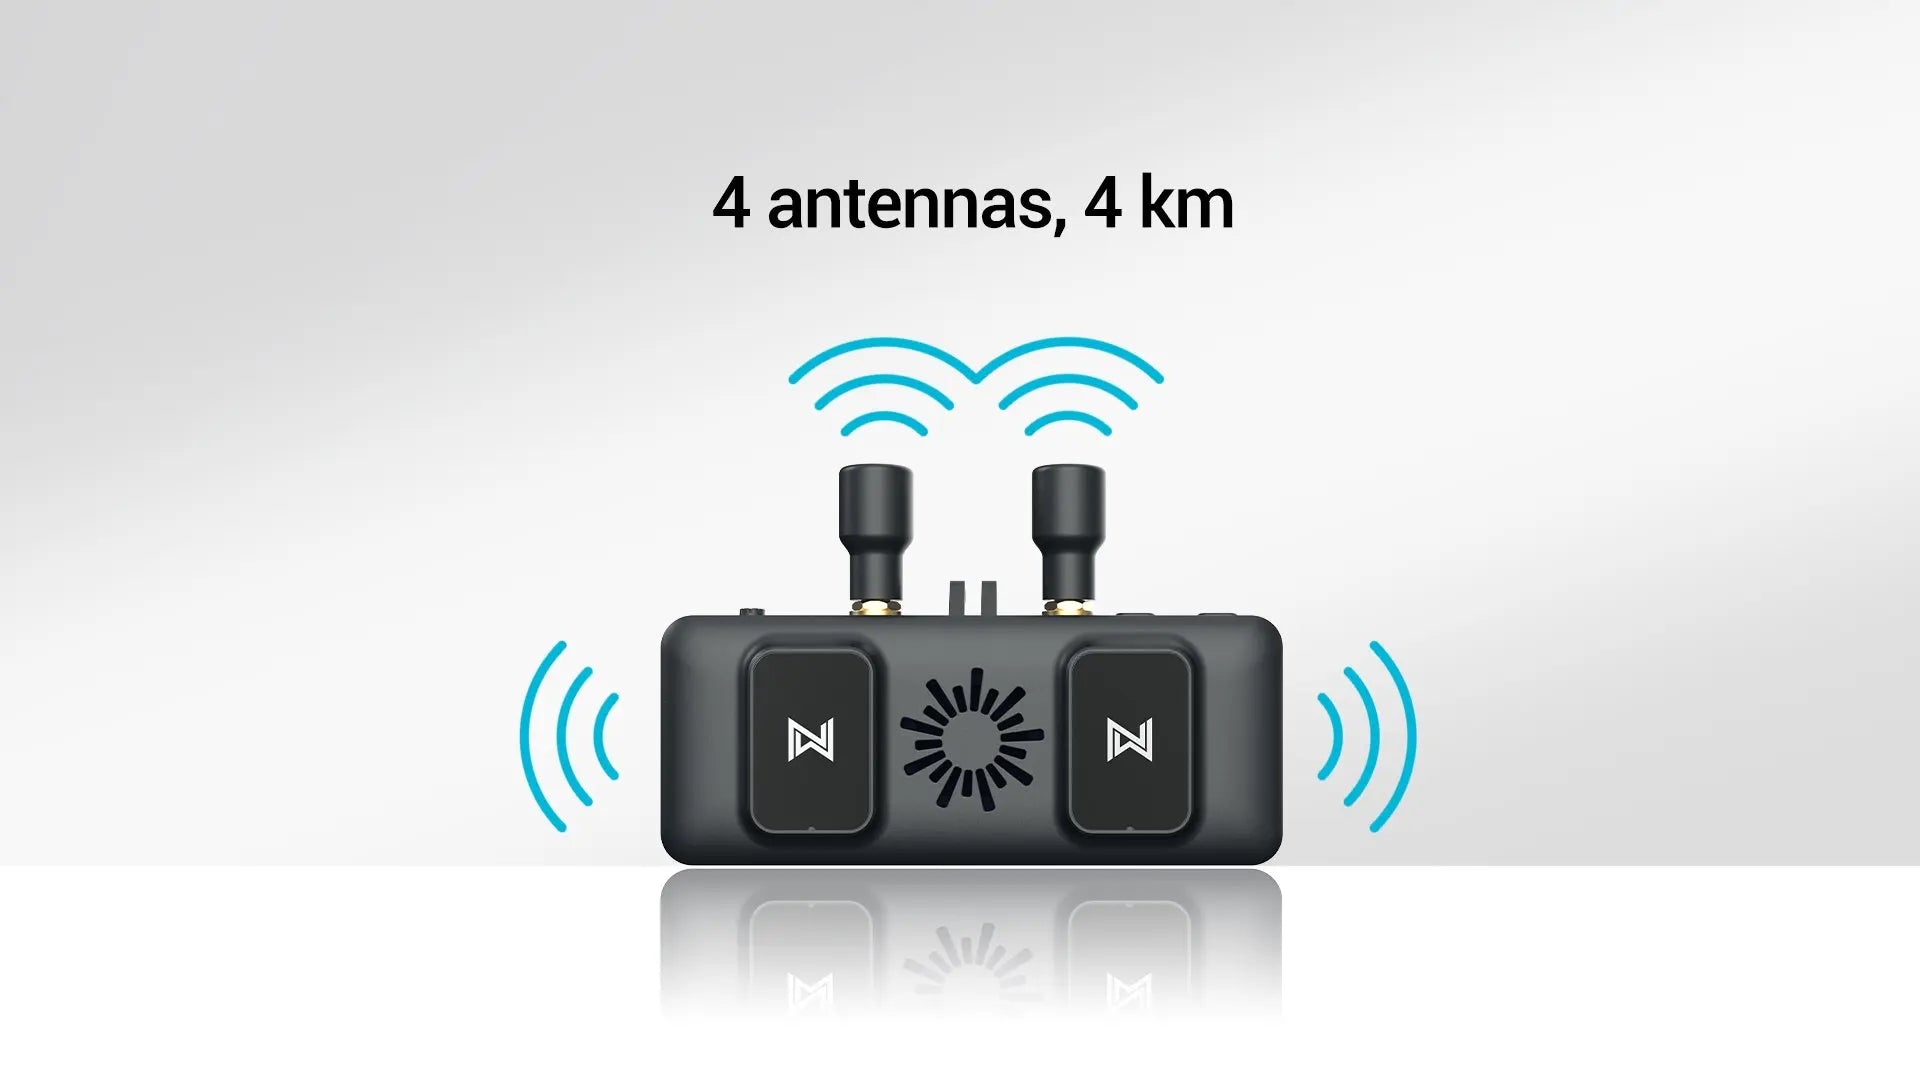 Walksnail Avatar VRX, Walksnail VRX adopts a 4pcs antenna design, with